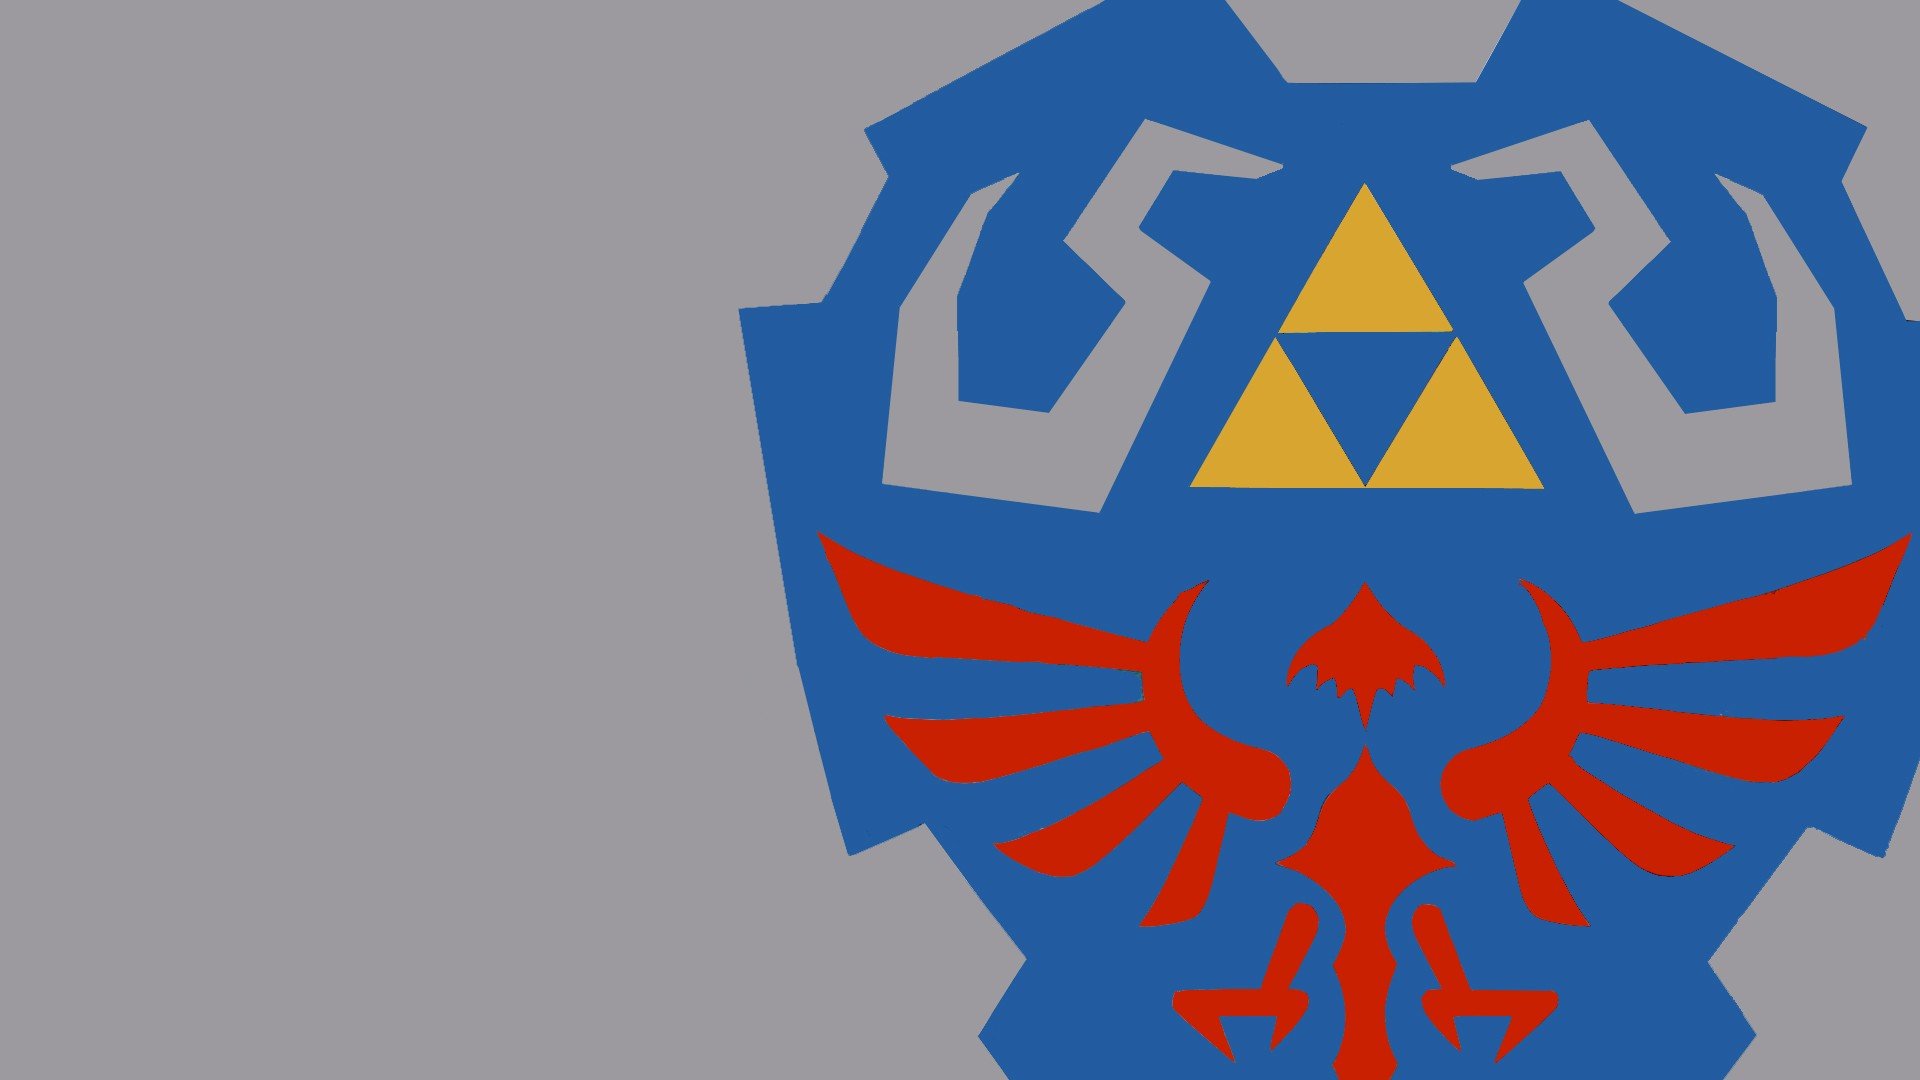 Zelda, Triforce, Hylian Shield Wallpaper